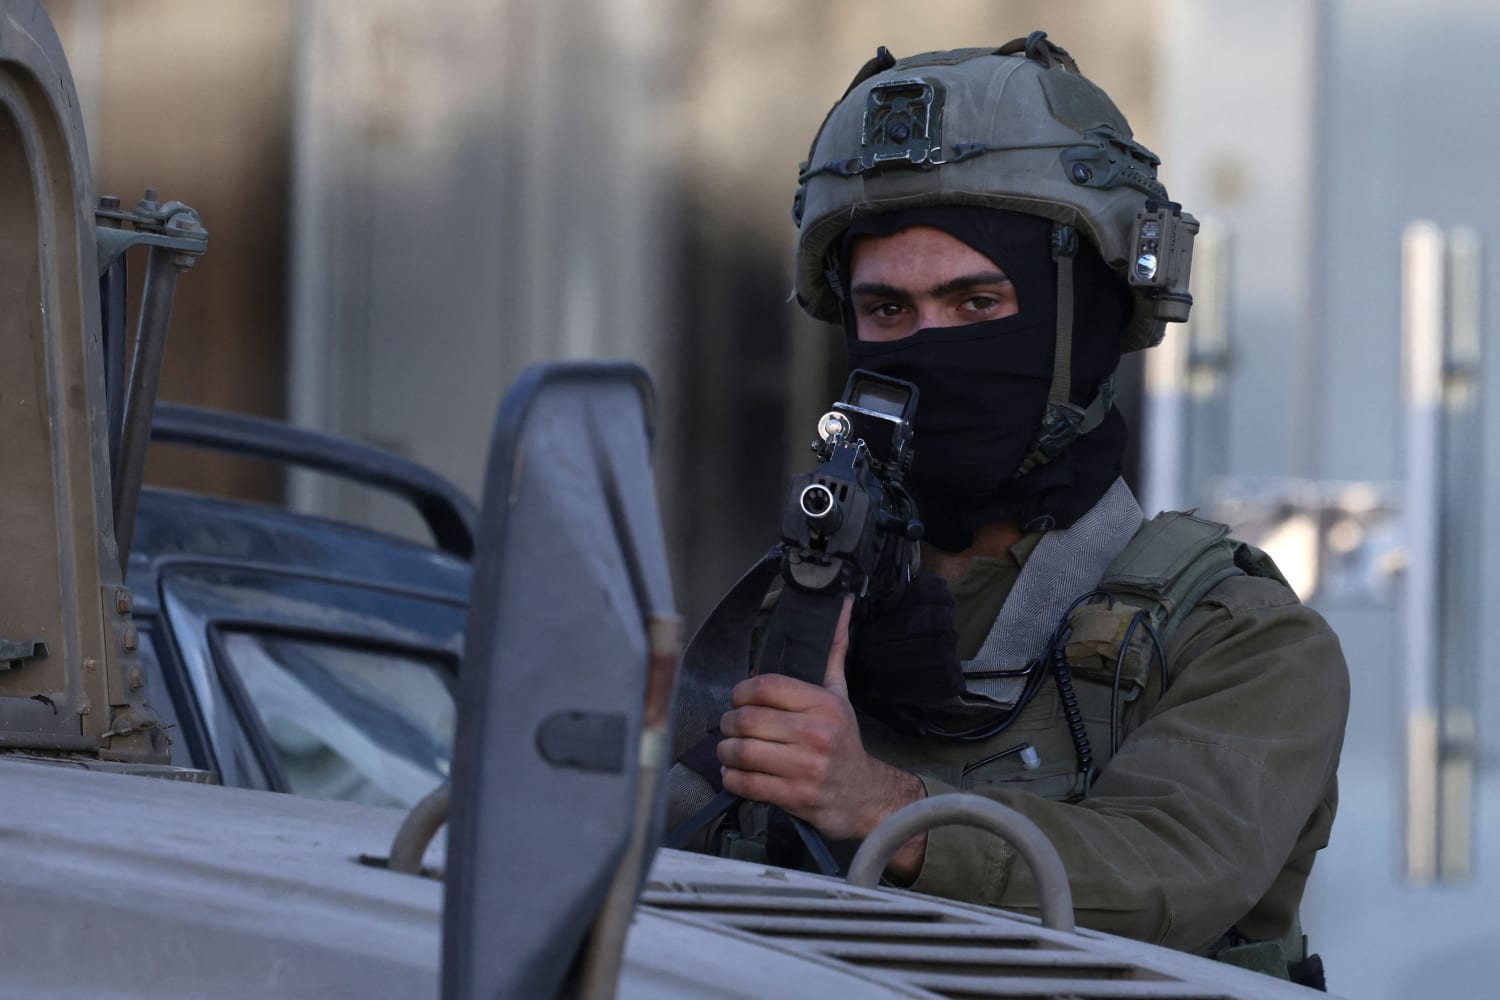 Israeli forces kill 3 Palestinian gunmen in West Bank